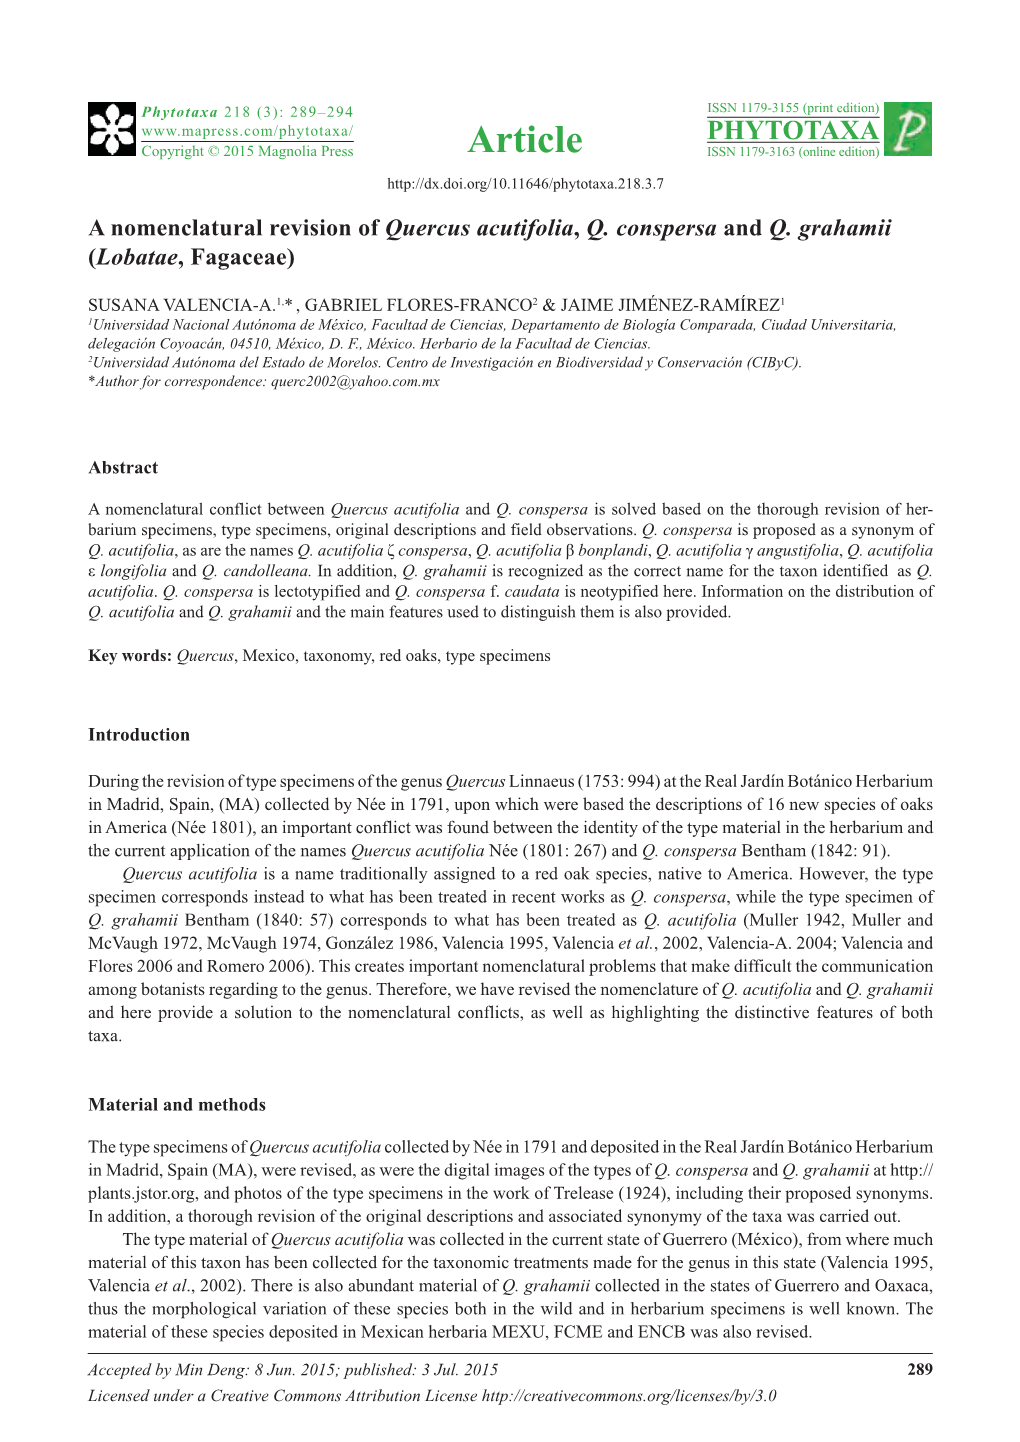 A Nomenclatural Revision of Quercus Acutifolia, Q. Conspersa and Q. Grahamii (Lobatae, Fagaceae)